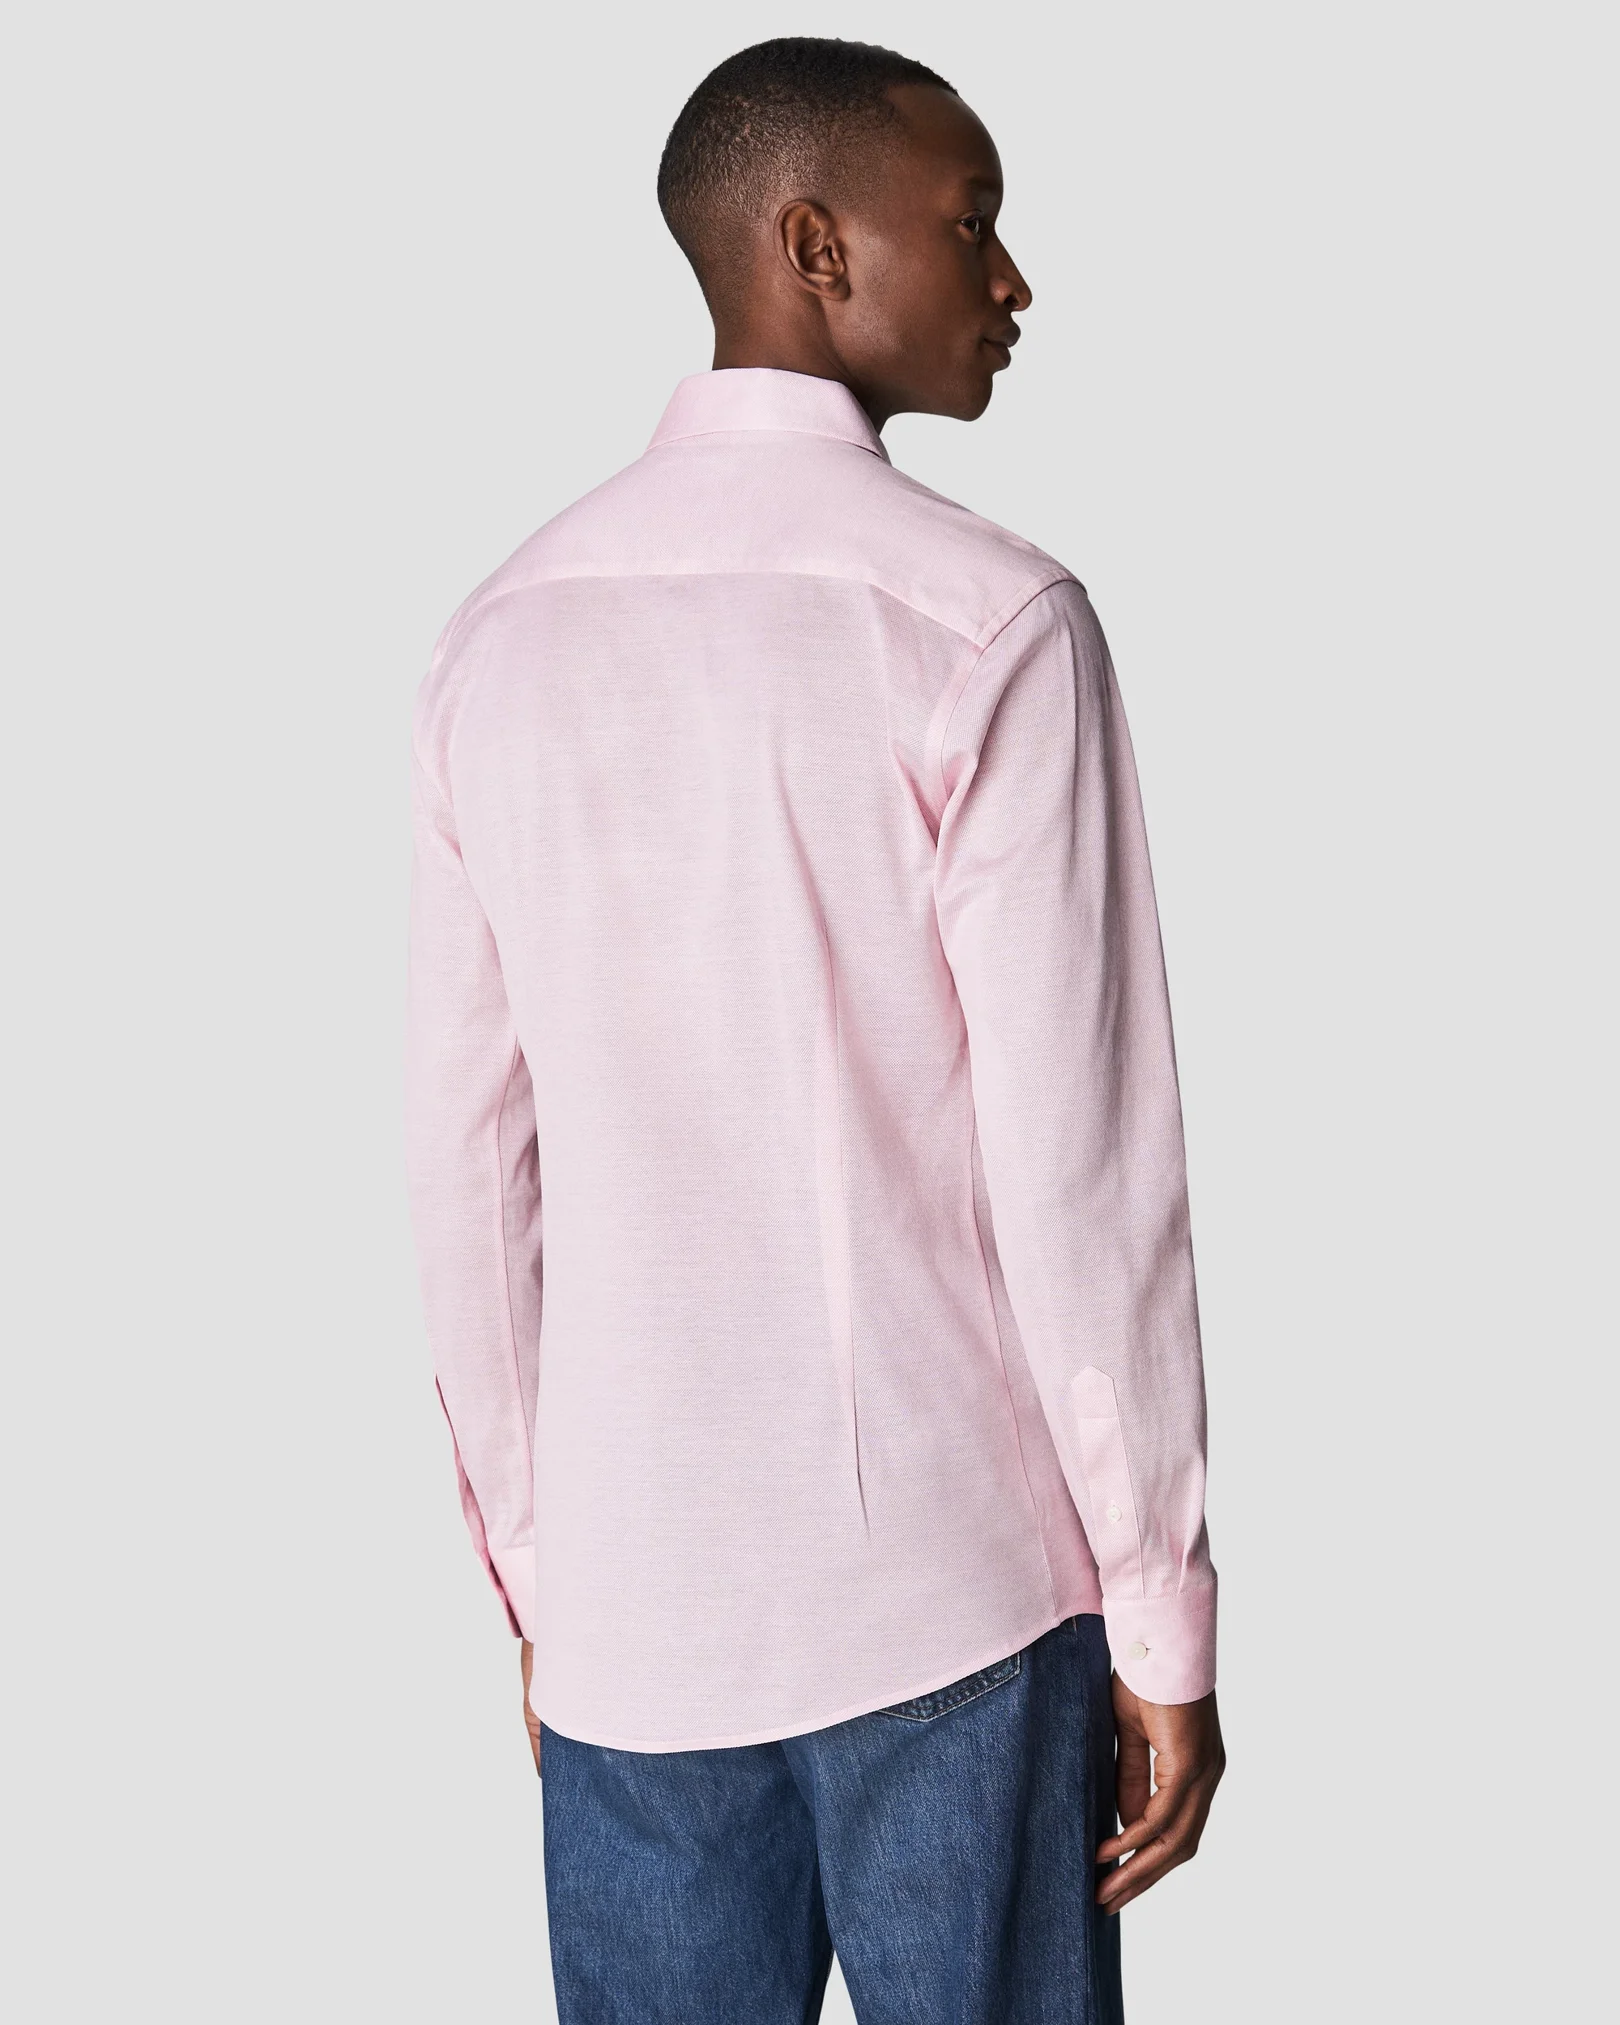 Eton - pink jersey